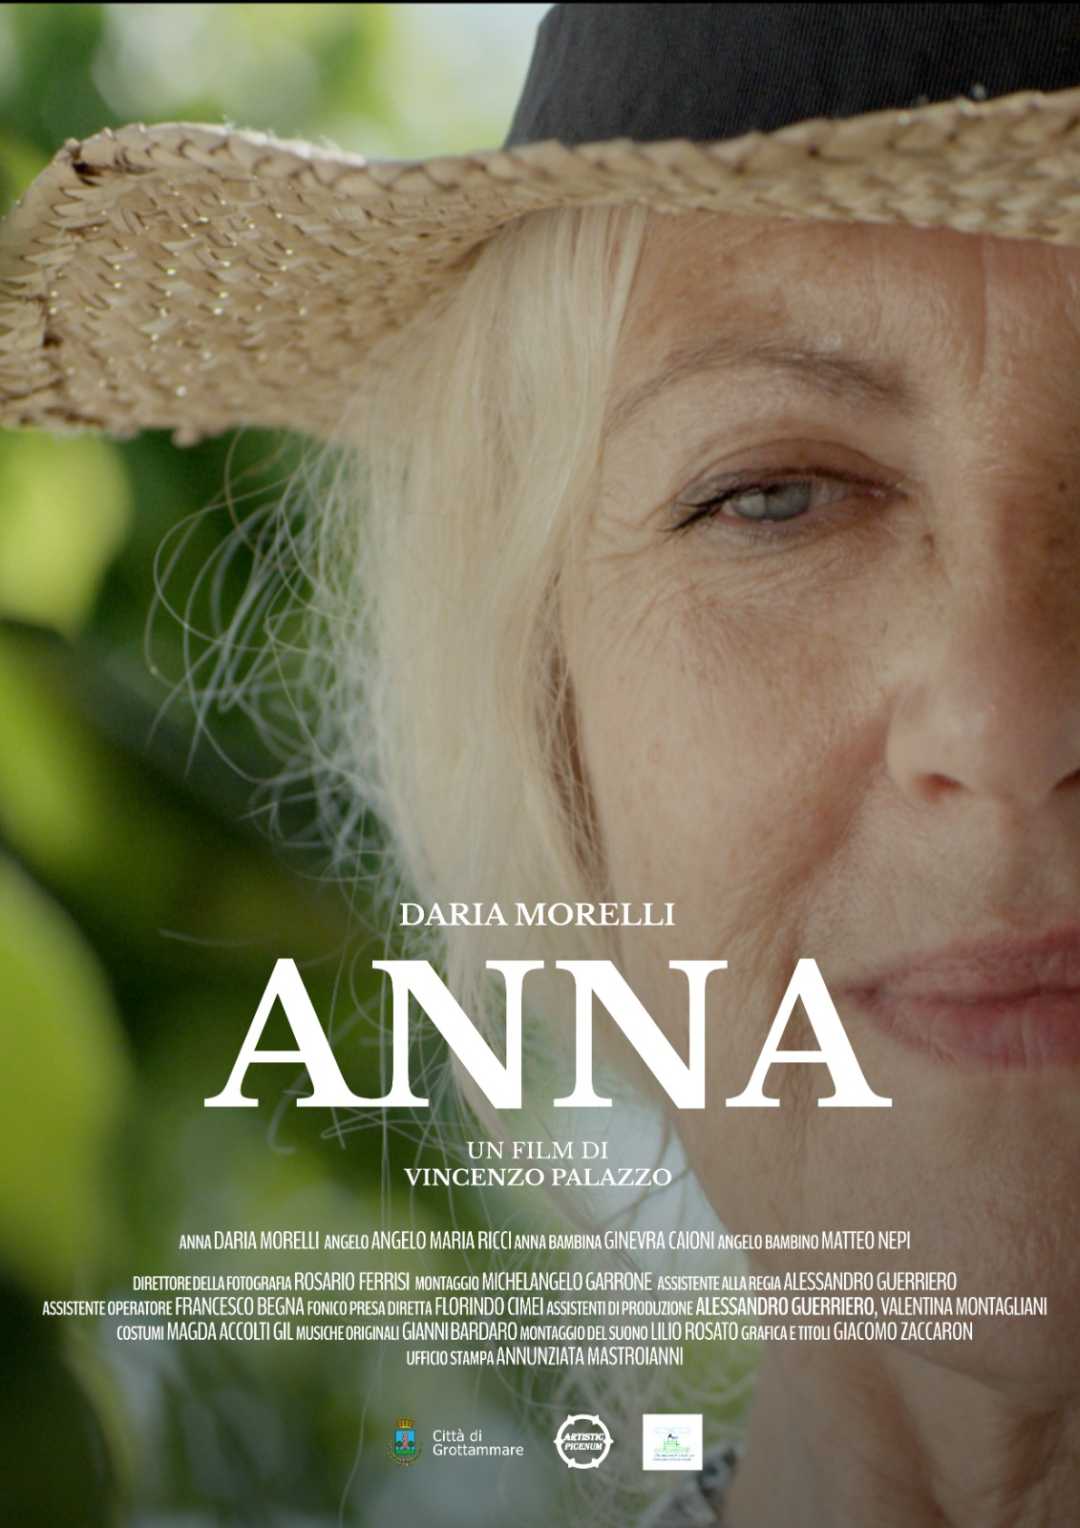 Il mondo artistico italiano si mobilita per lo short movie made in Grottammare “Anna”